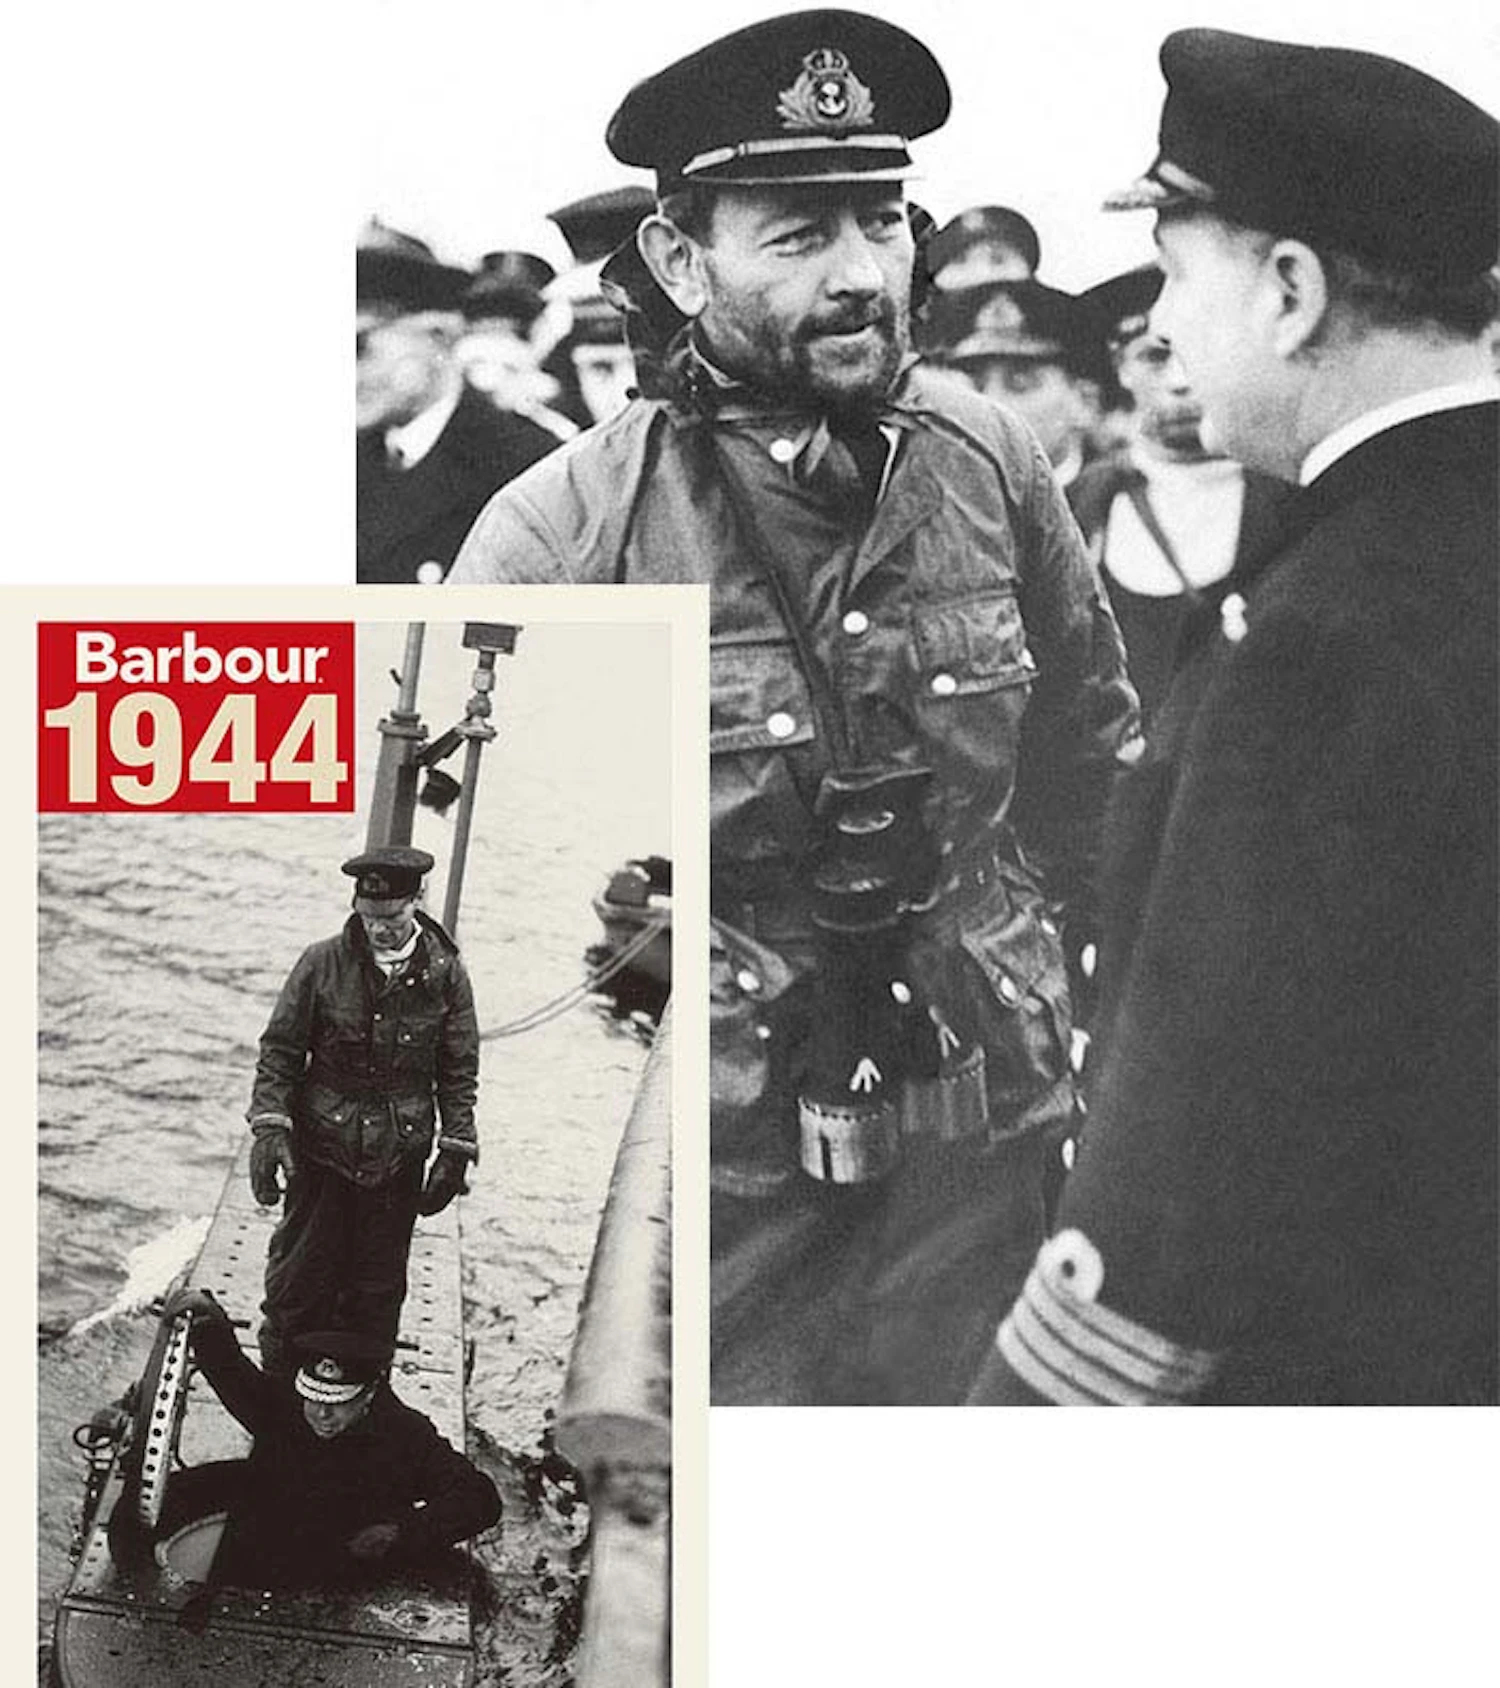 Barbourのジャケットを着た英国海軍ジョージ・フィリップス大尉